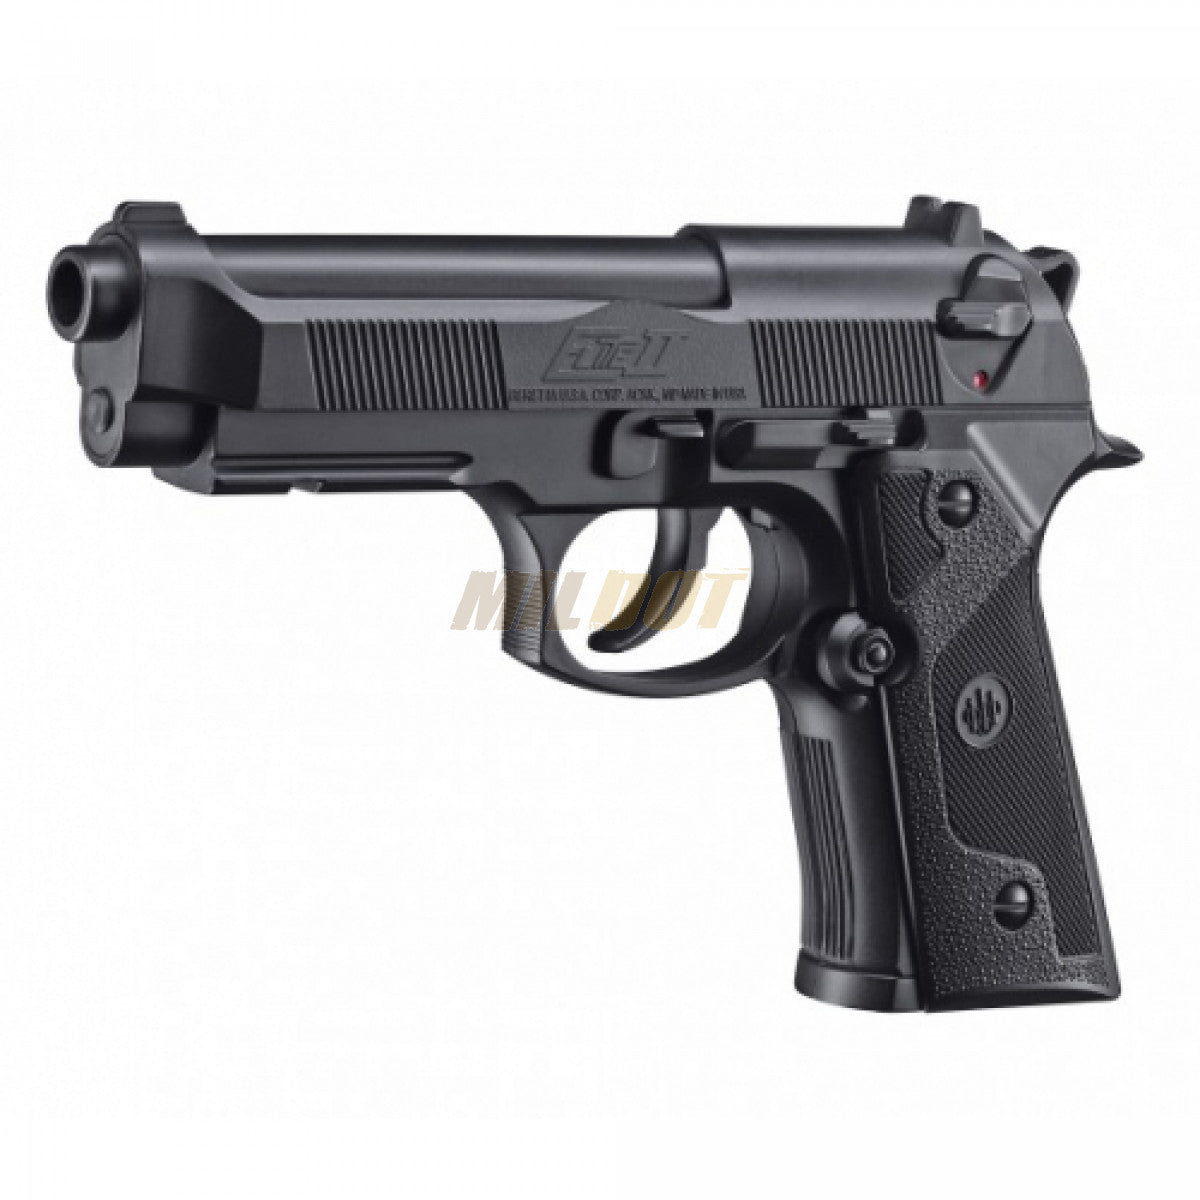 Pistola Beretta 92 De Balines